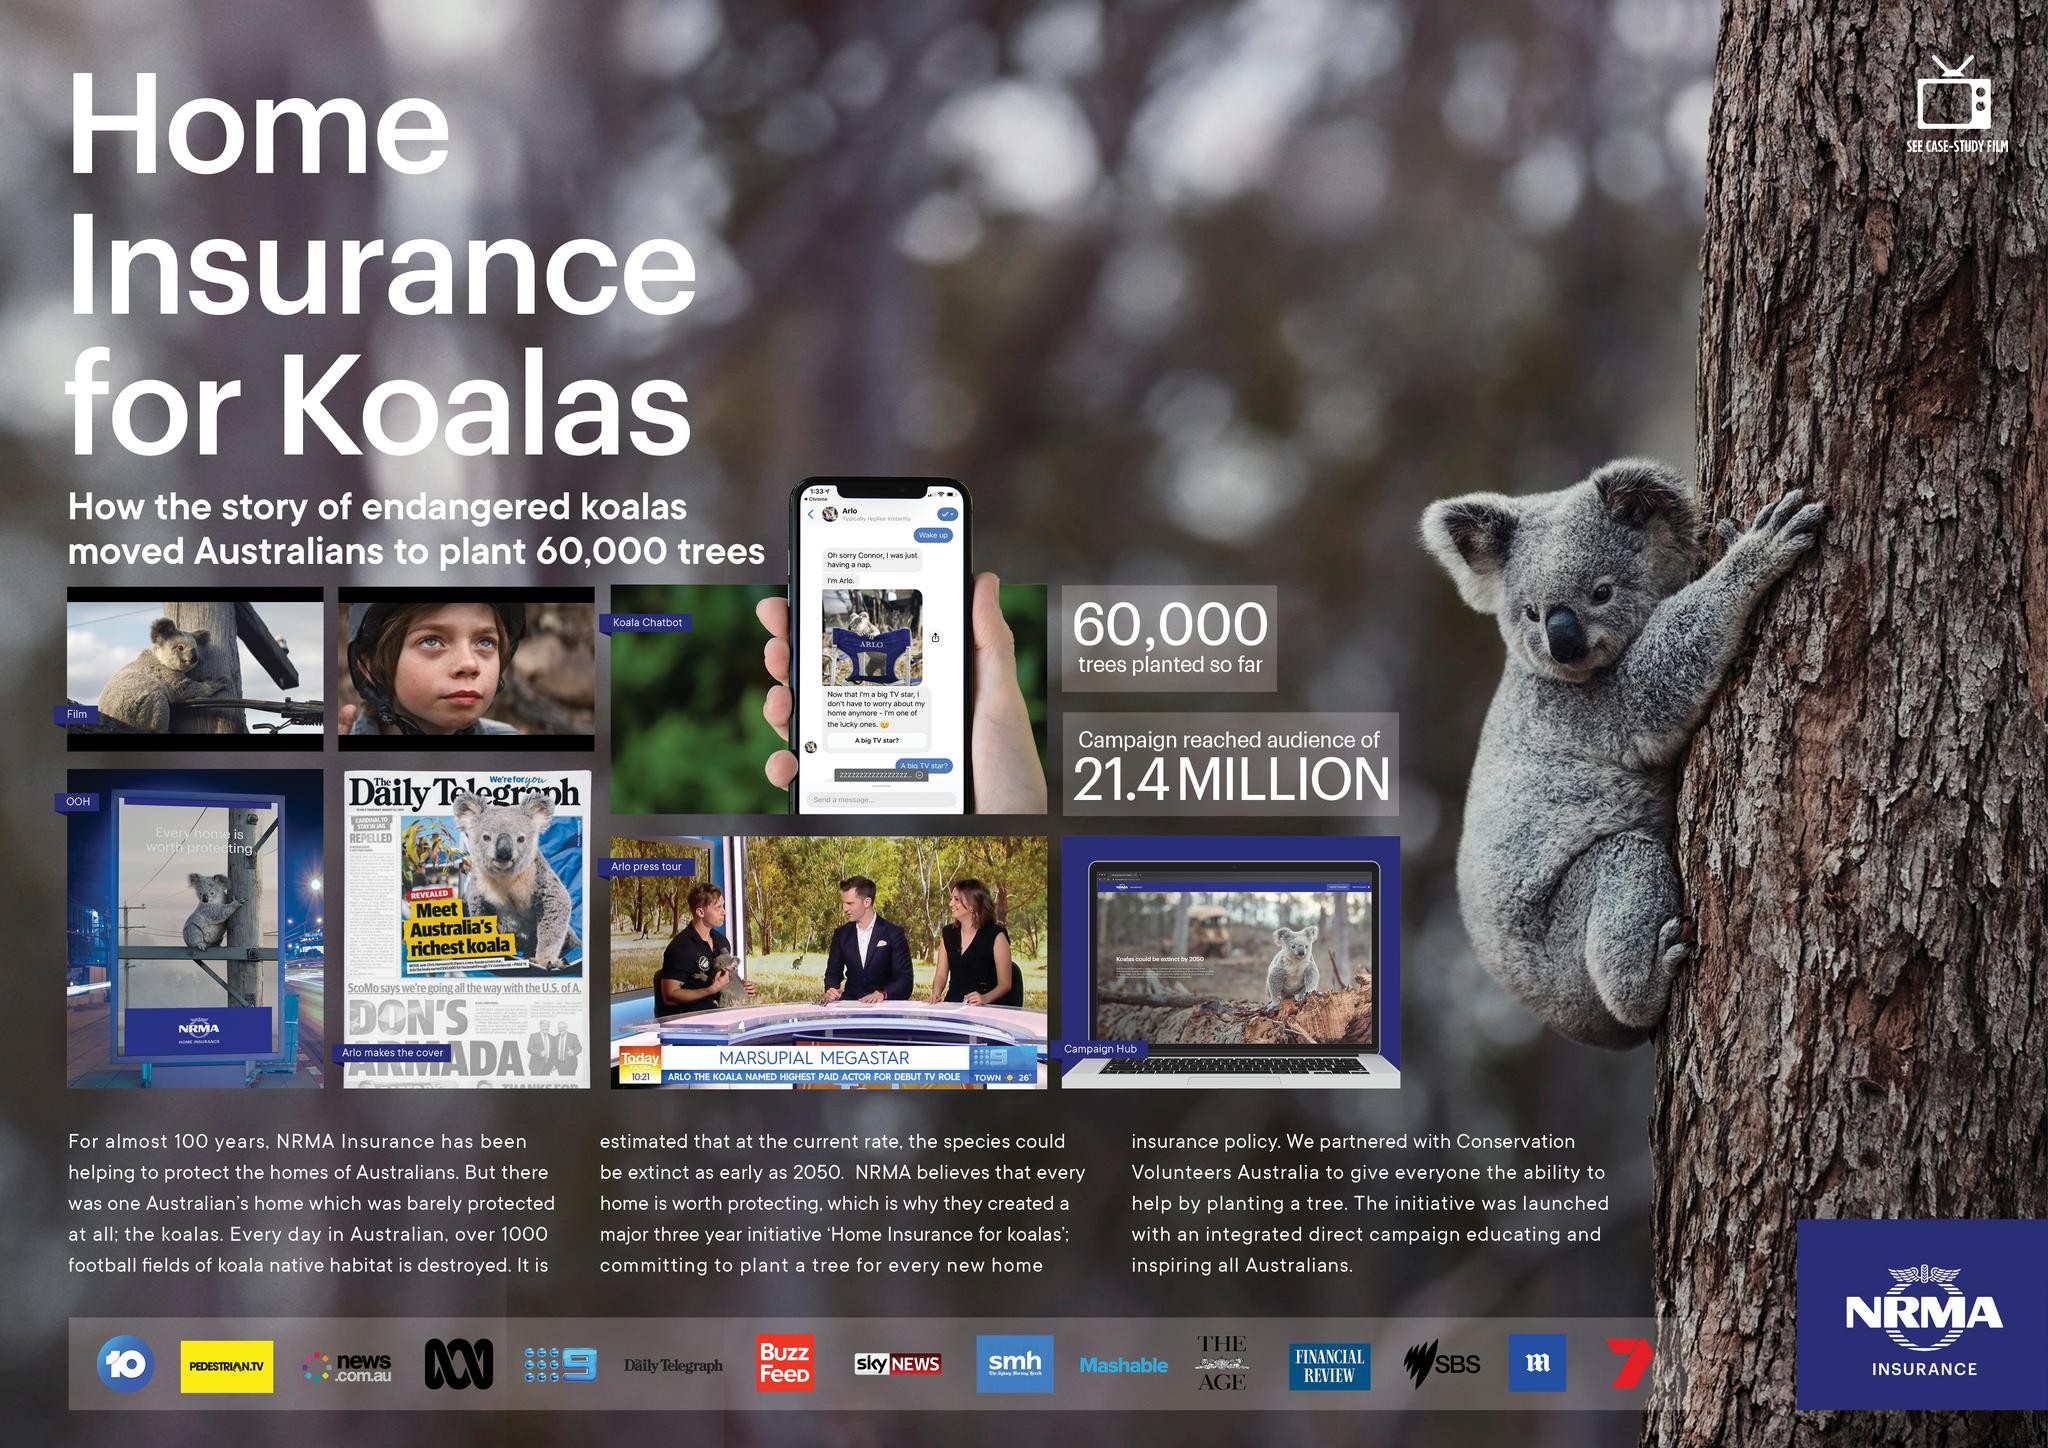 Home Insurance for Koalas